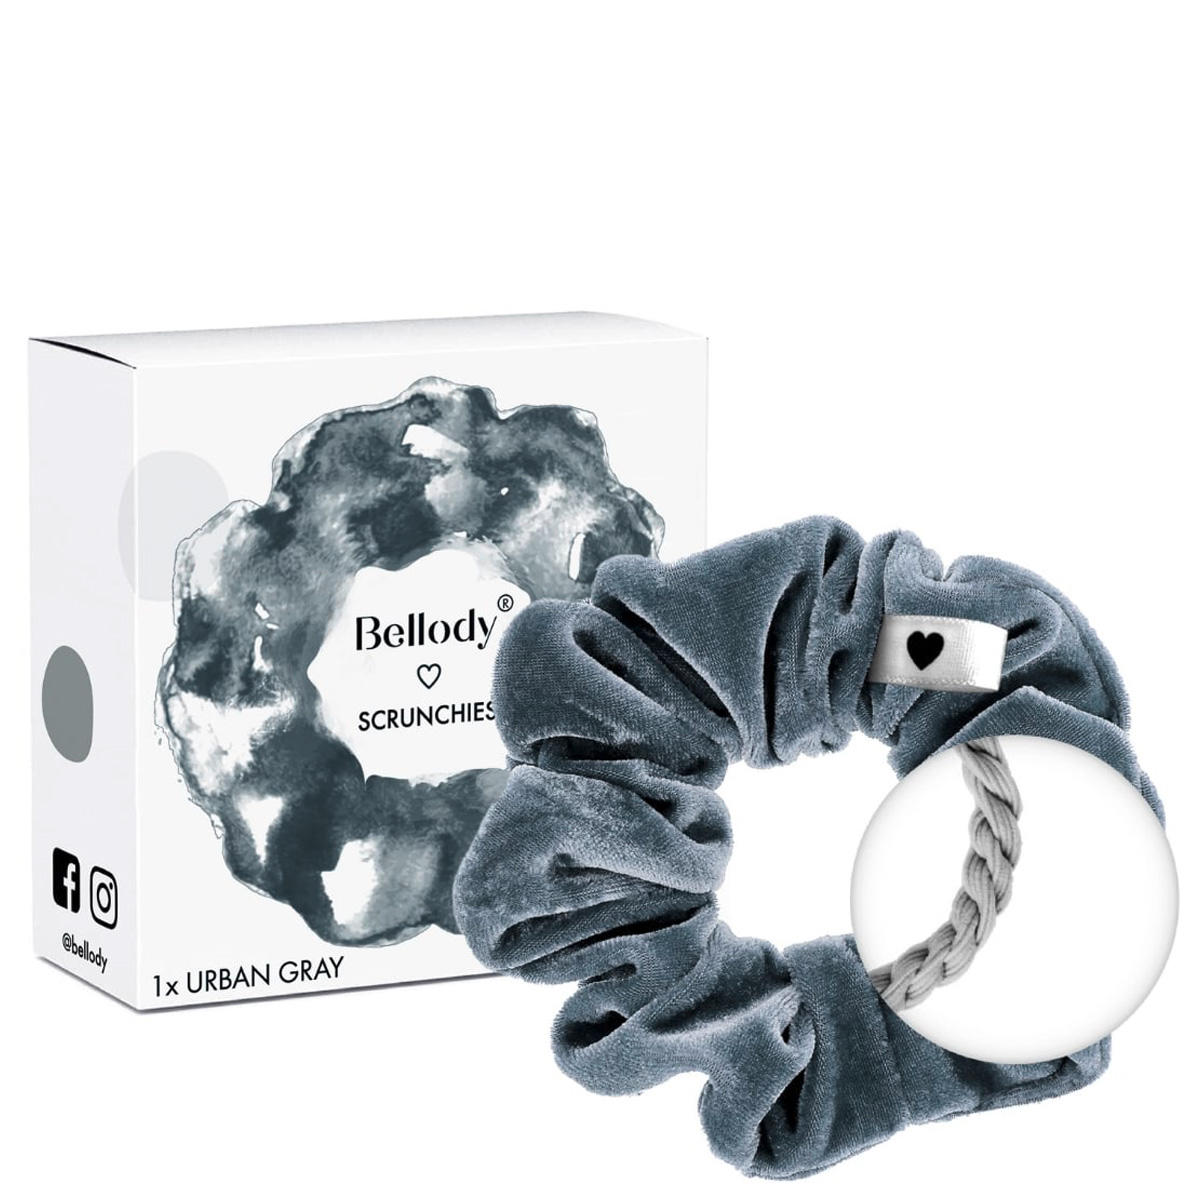 Bellody Original Scrunchies Urban Gray 1 Stück - 2